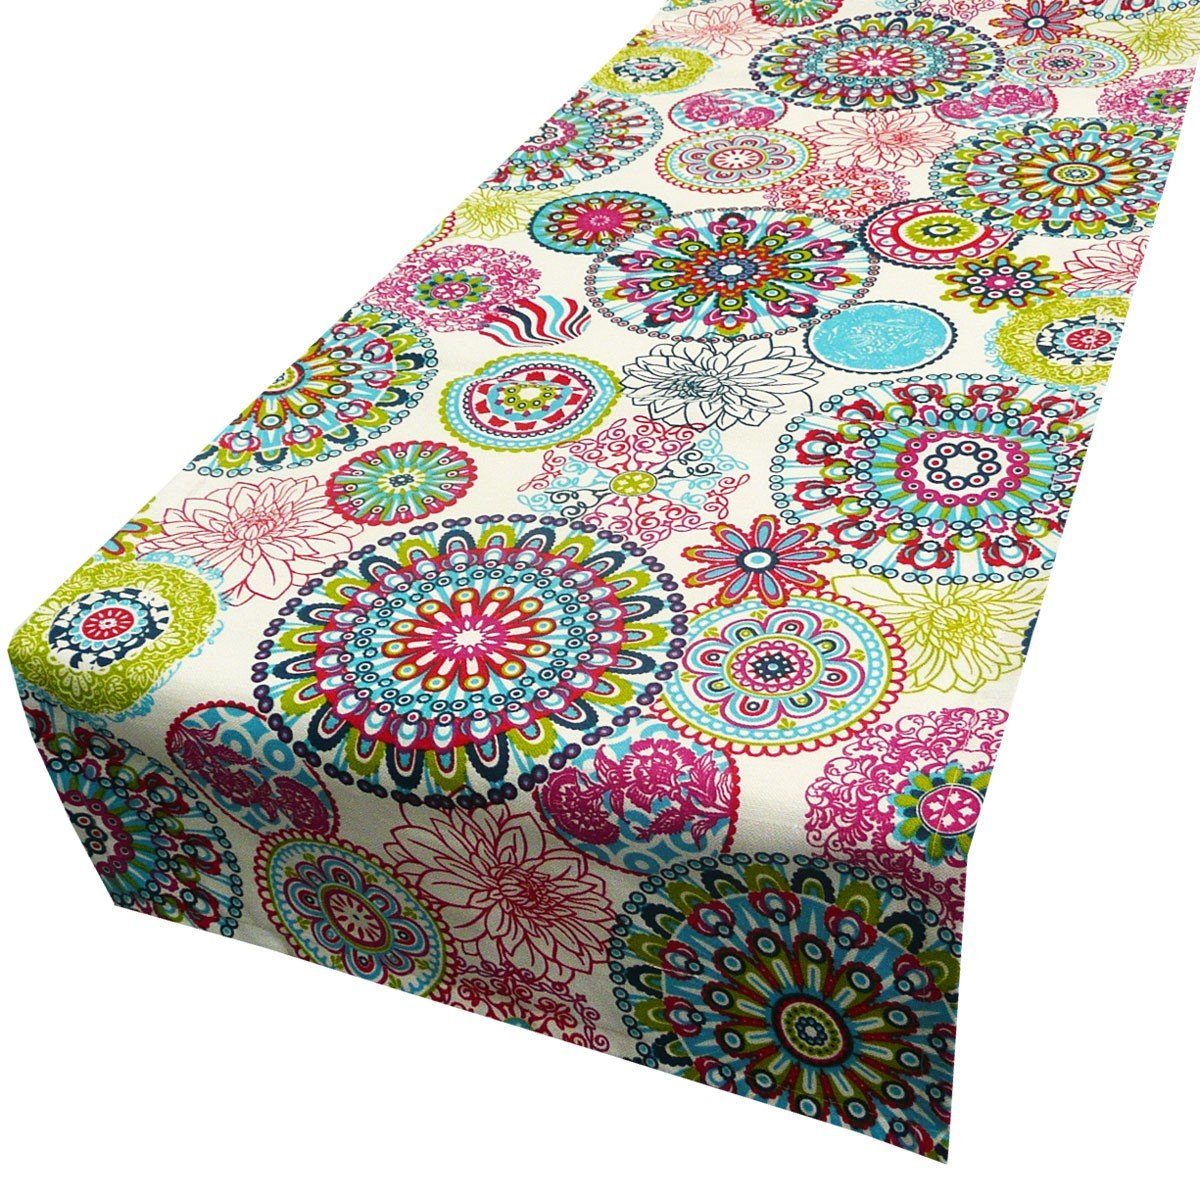 SCHÖNER LEBEN. Tischläufer Schöner Leben Tischläufer Blumen Mandala bunt 40x160cm, handmade